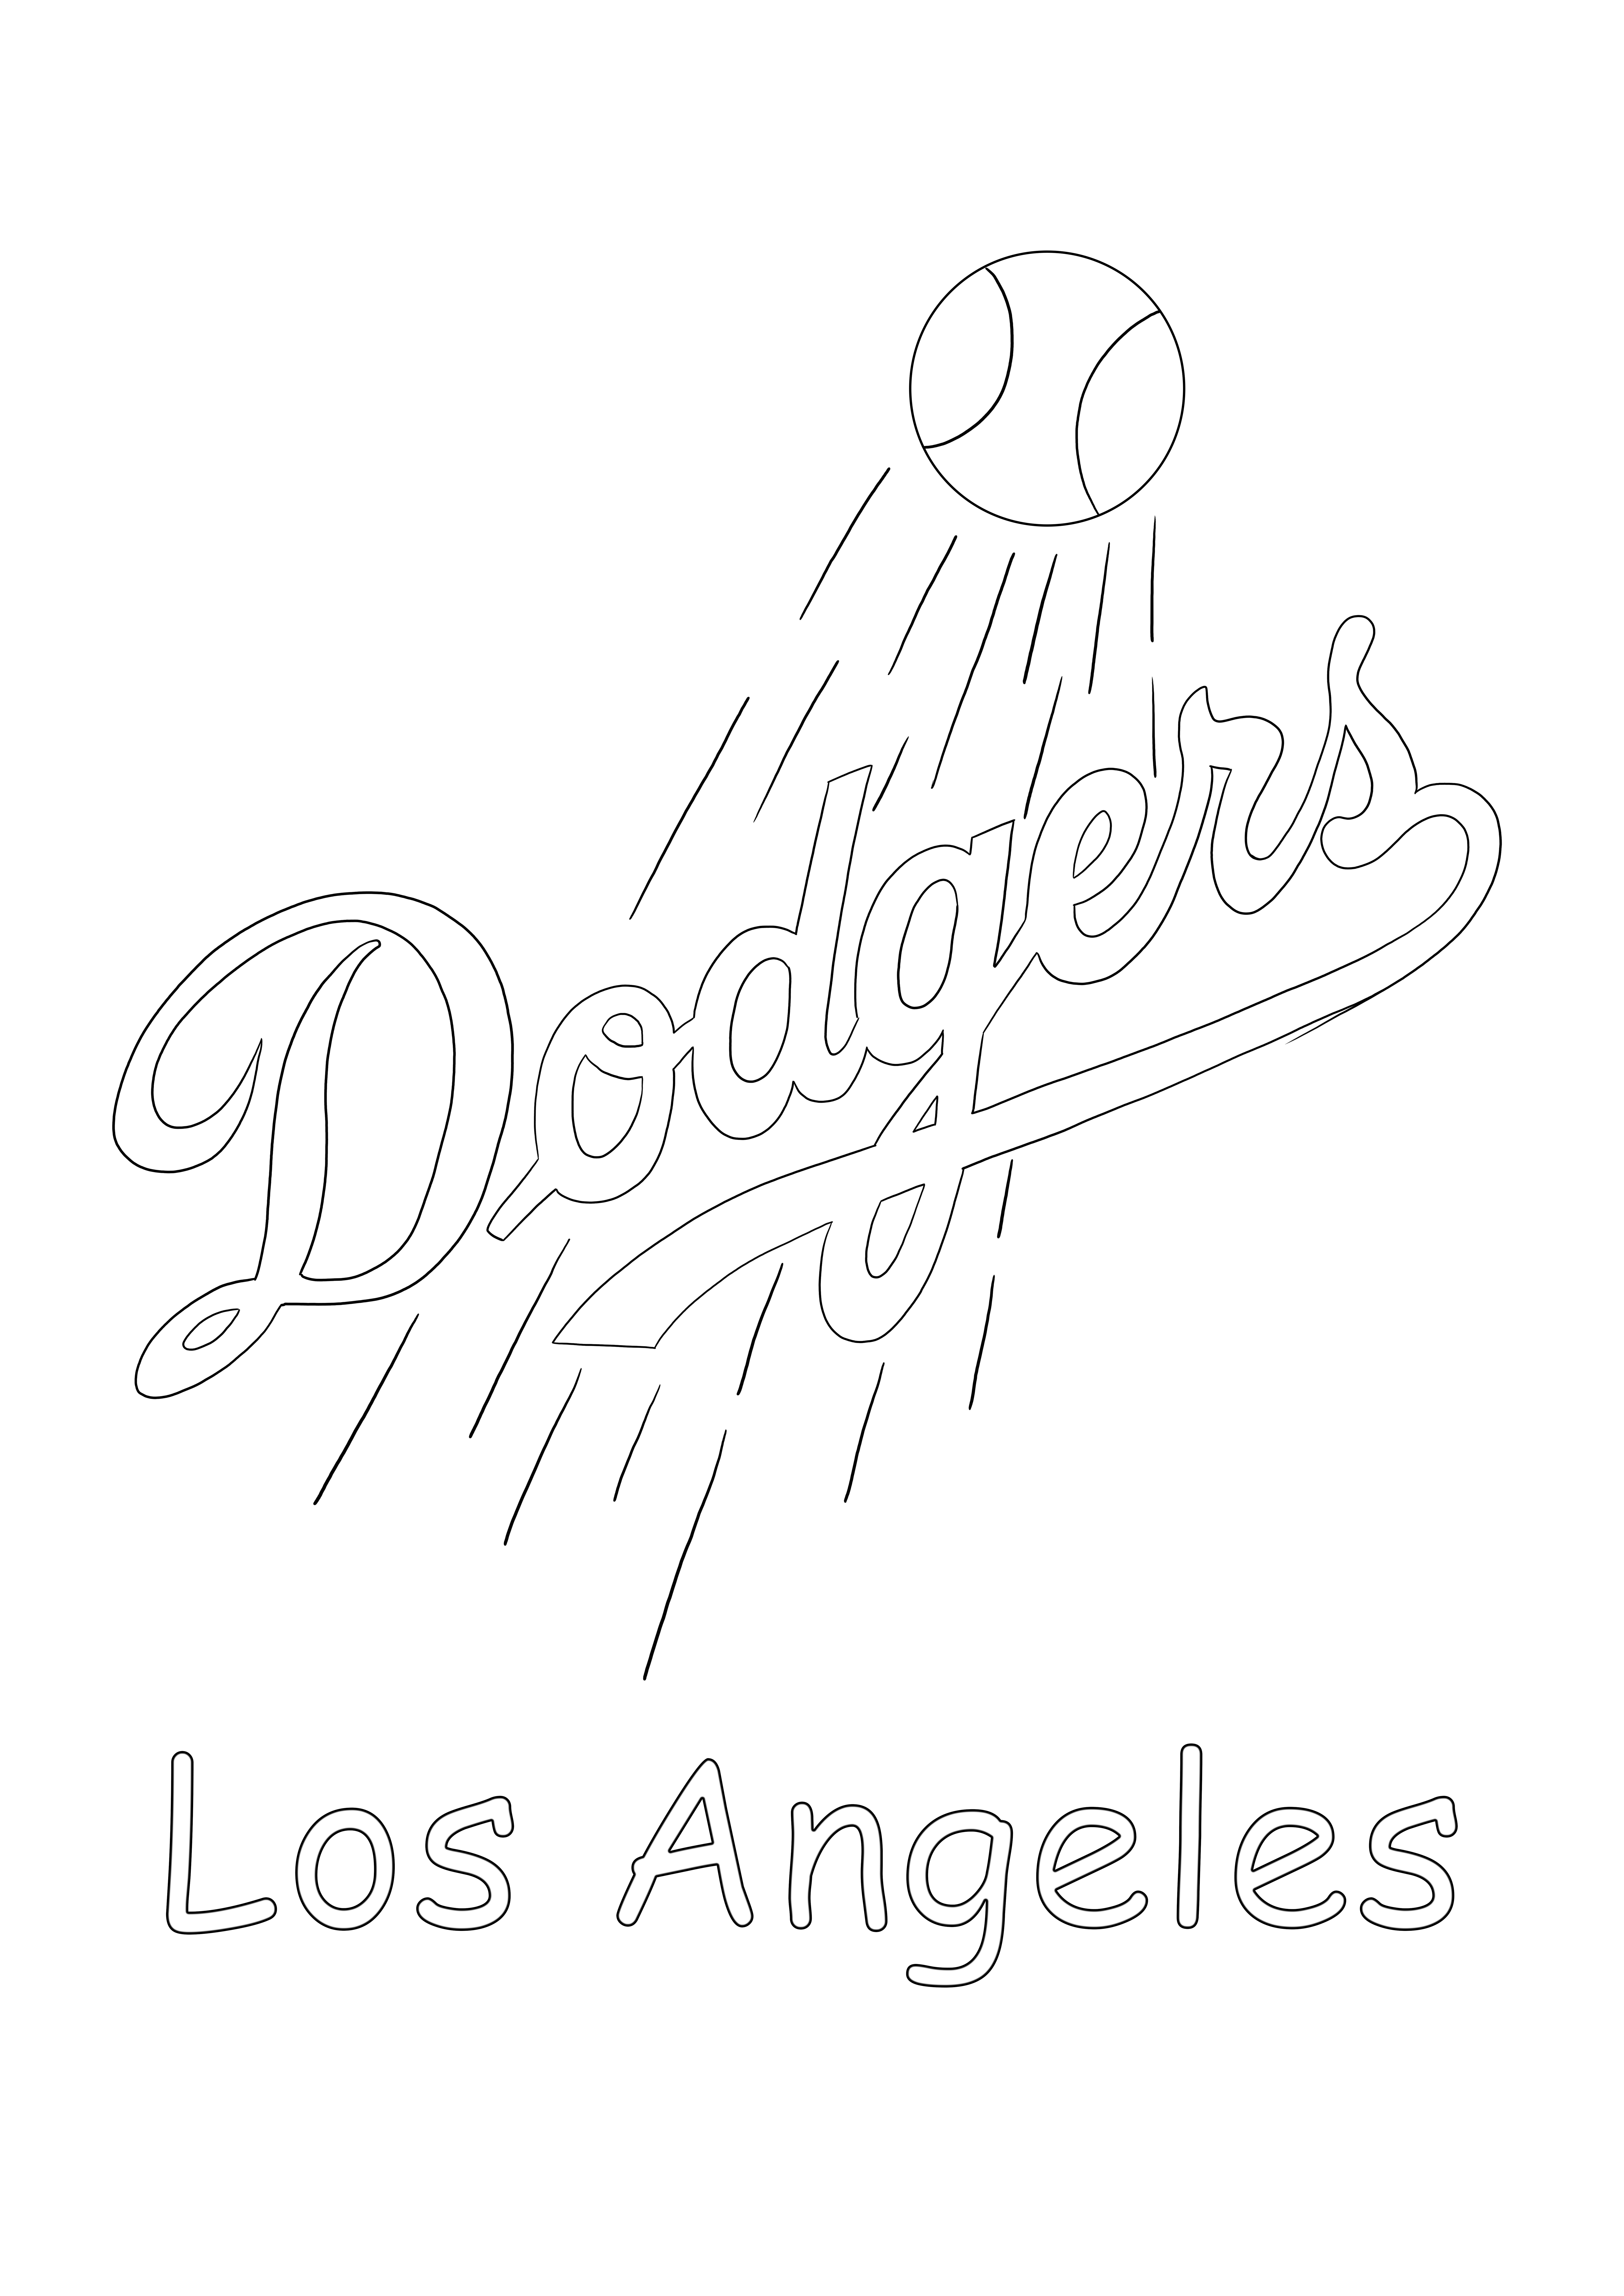 Logo dei Los Angeles Dodgers da stampare e colorare gratis per tutti i fan della MLB